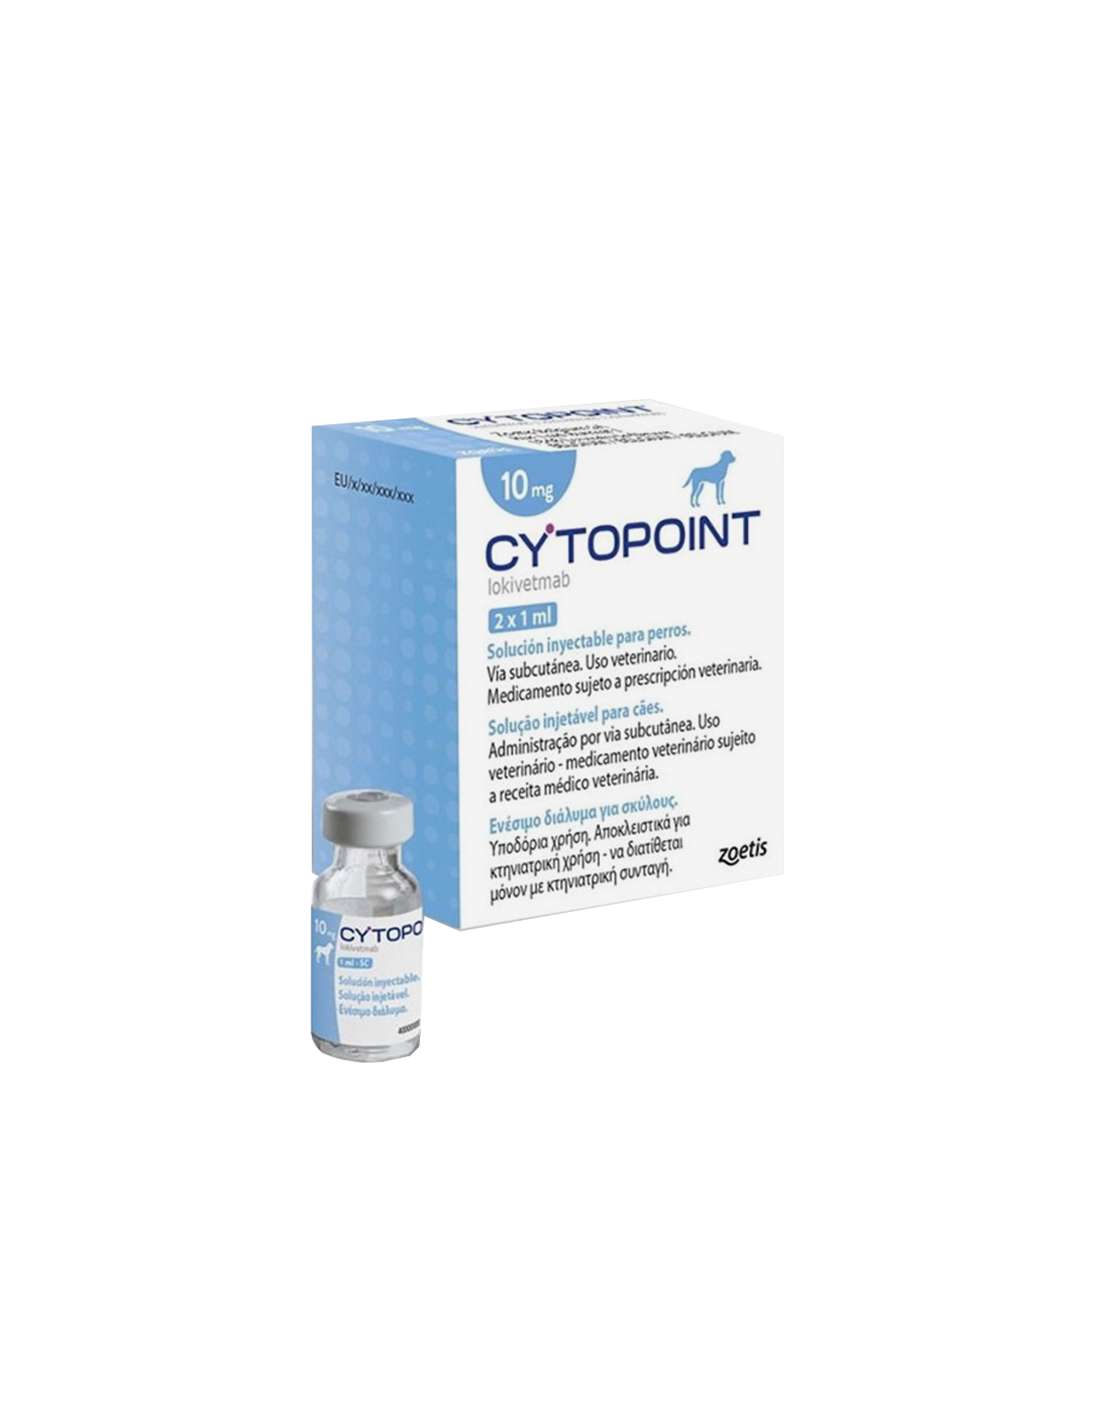 cytopoint-40-mg-1-vial-hospital-veterinario-albiter-24-hrs